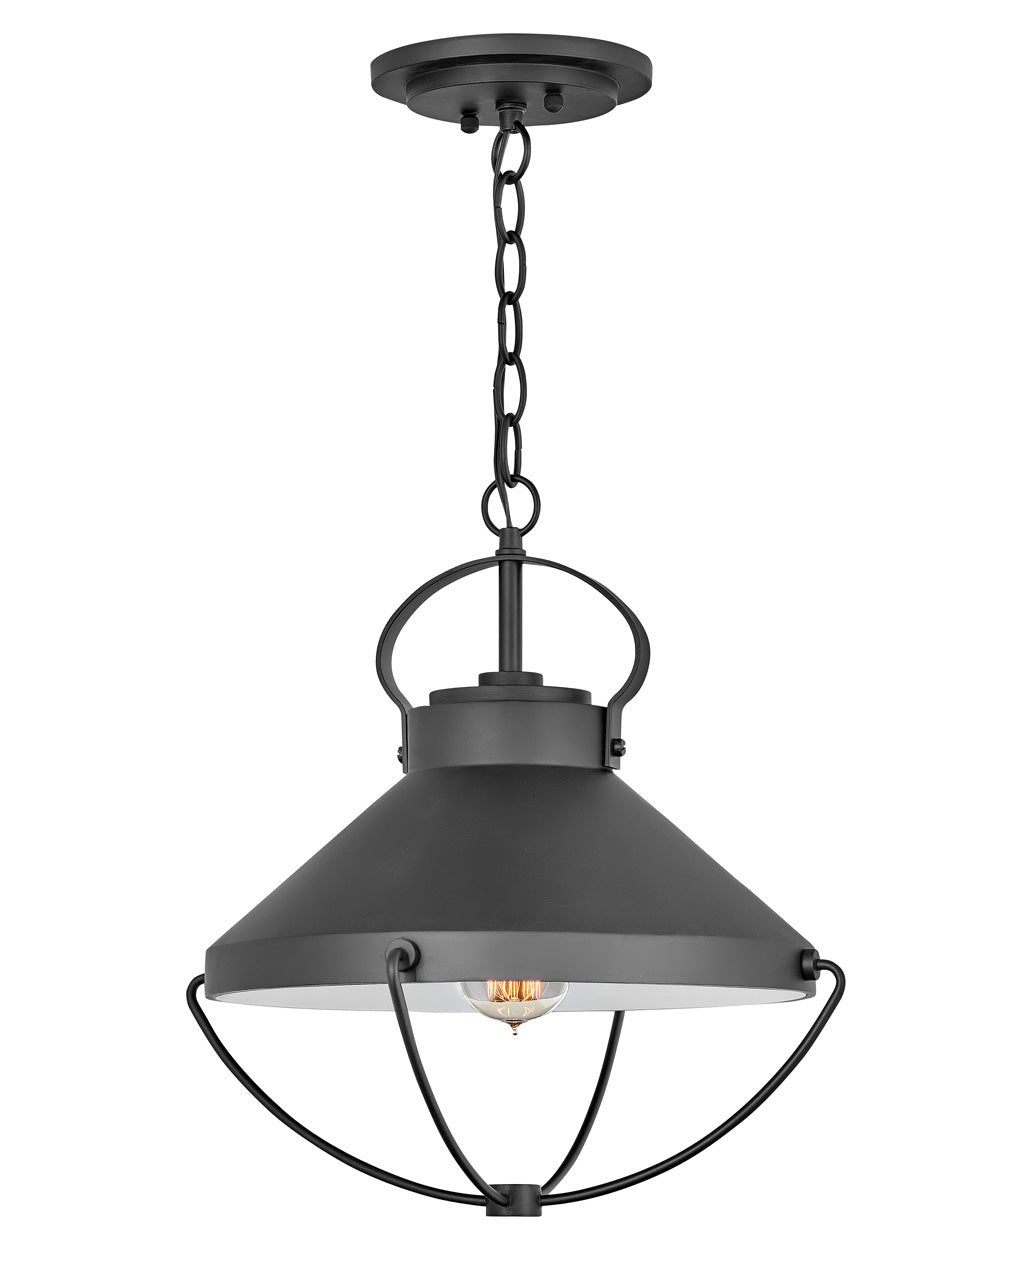 OUTDOOR CREW Hanging Lantern Outdoor Light Fixture l Hanging Hinkley Black 15.0x15.0x15.75 